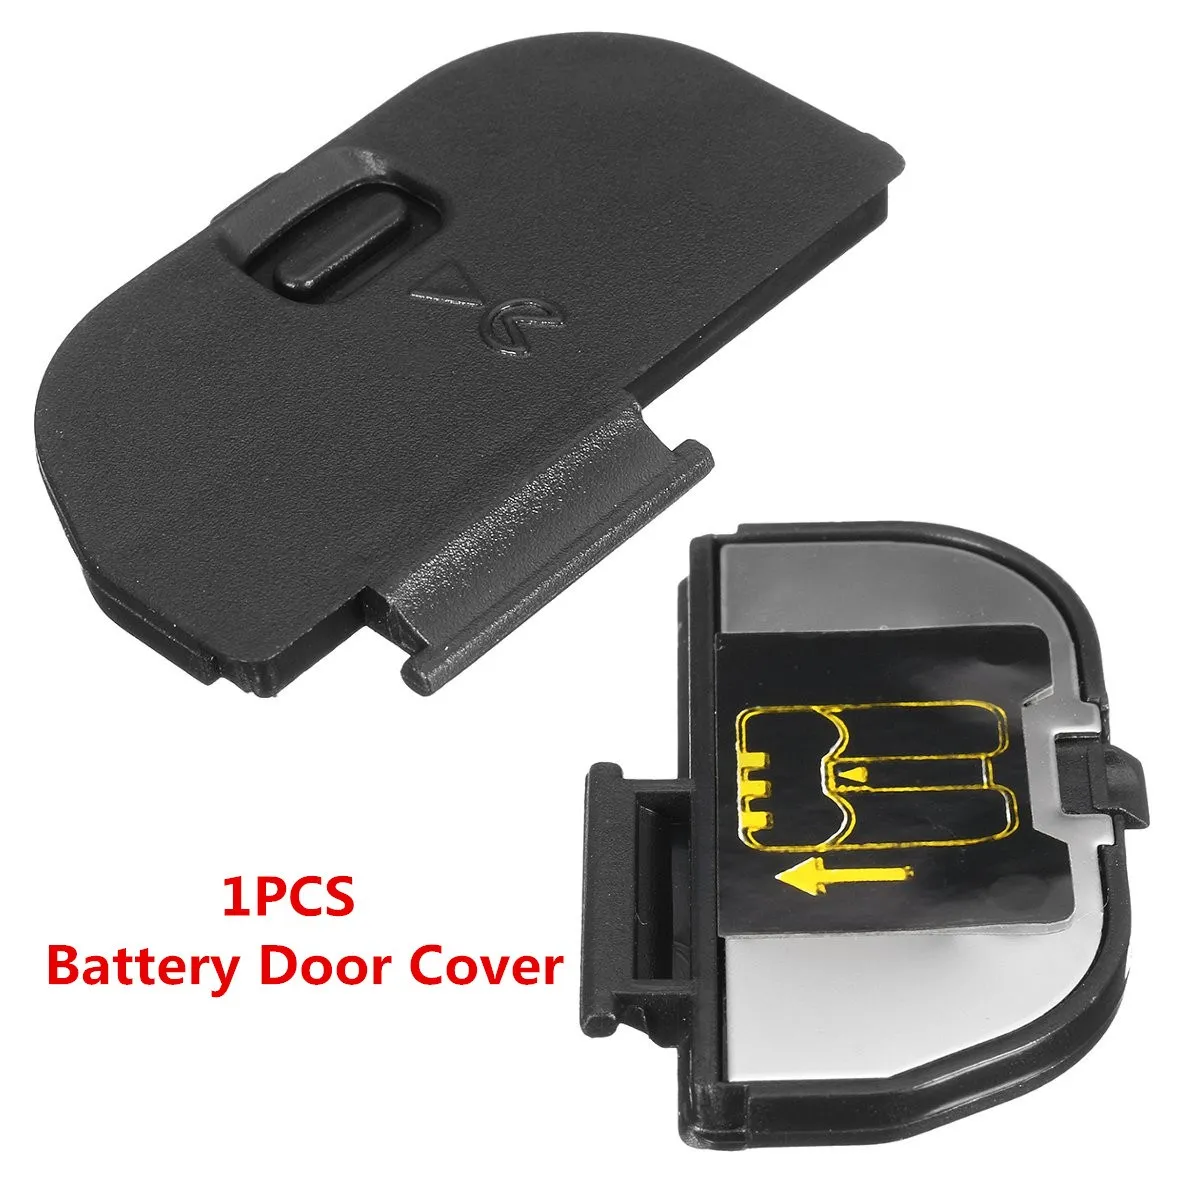 Battery Door Cover Lid Repair Replacement Part Plastic For Nikon D80 D90